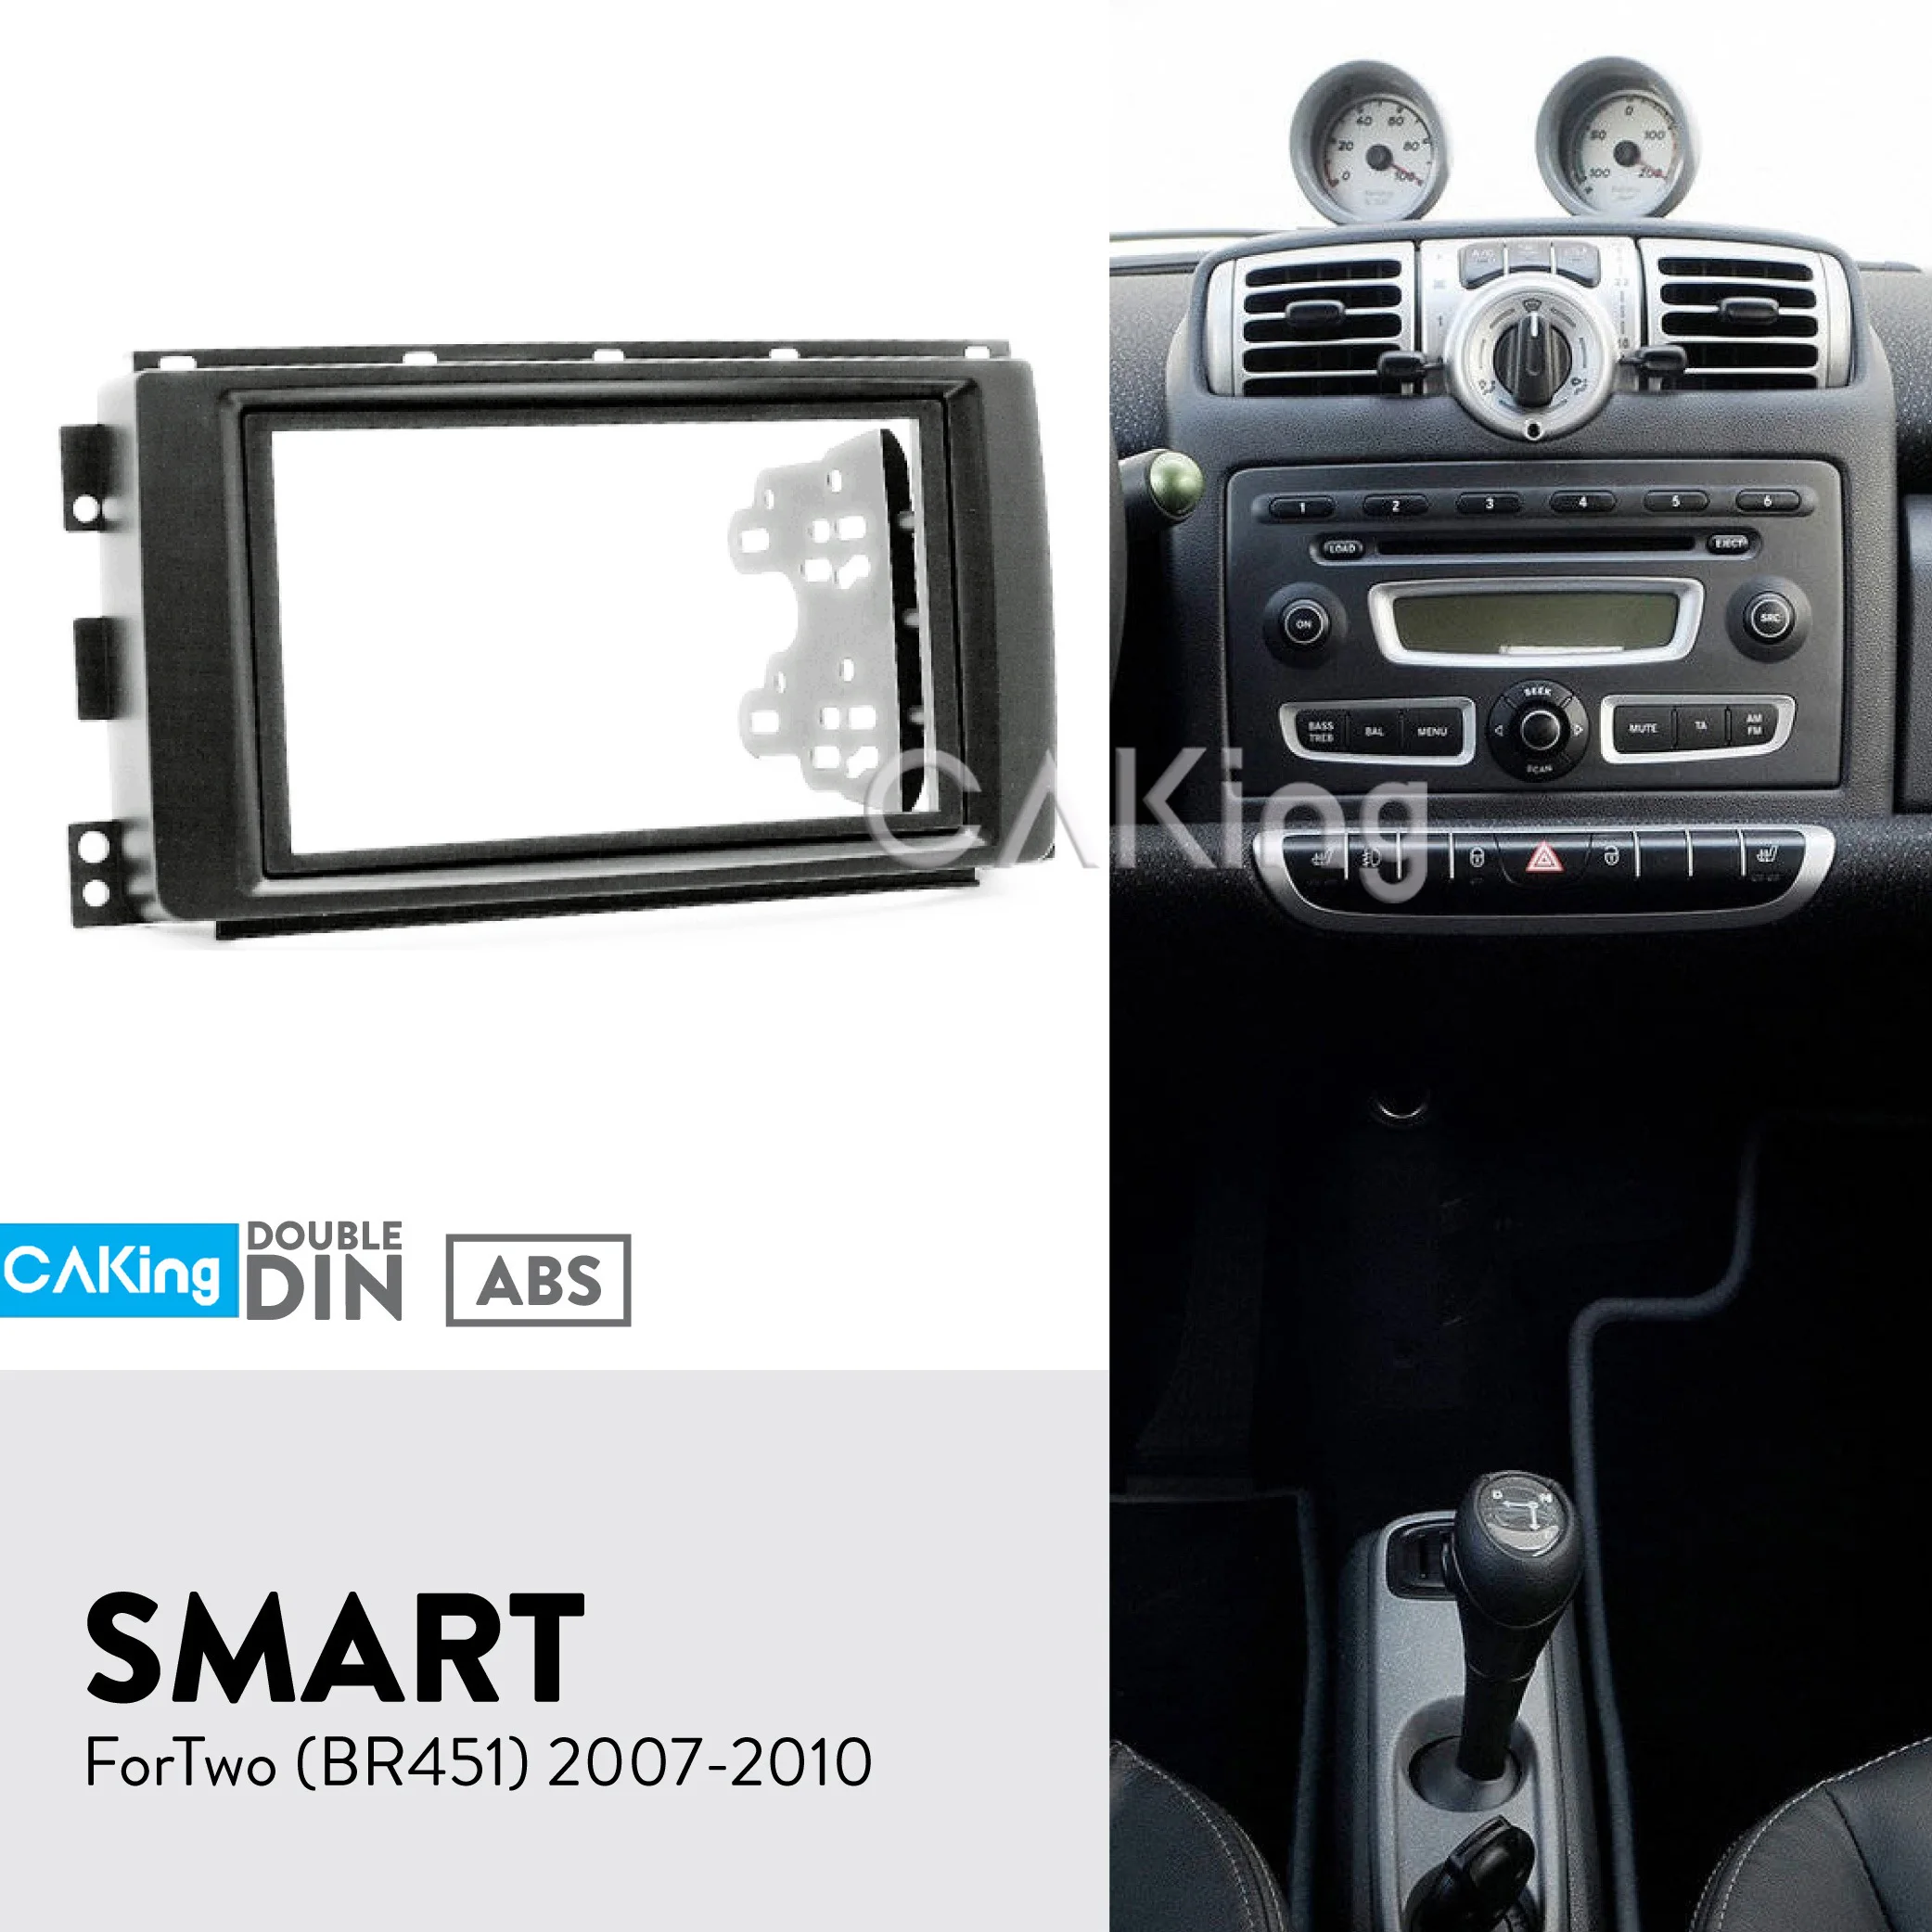 Двойной Din Автомобильный Радио панель для Smart ForTwo(BR451) 2007-2010 приборная установка комплект наборная доска установочная пластина крышка адаптера рамка